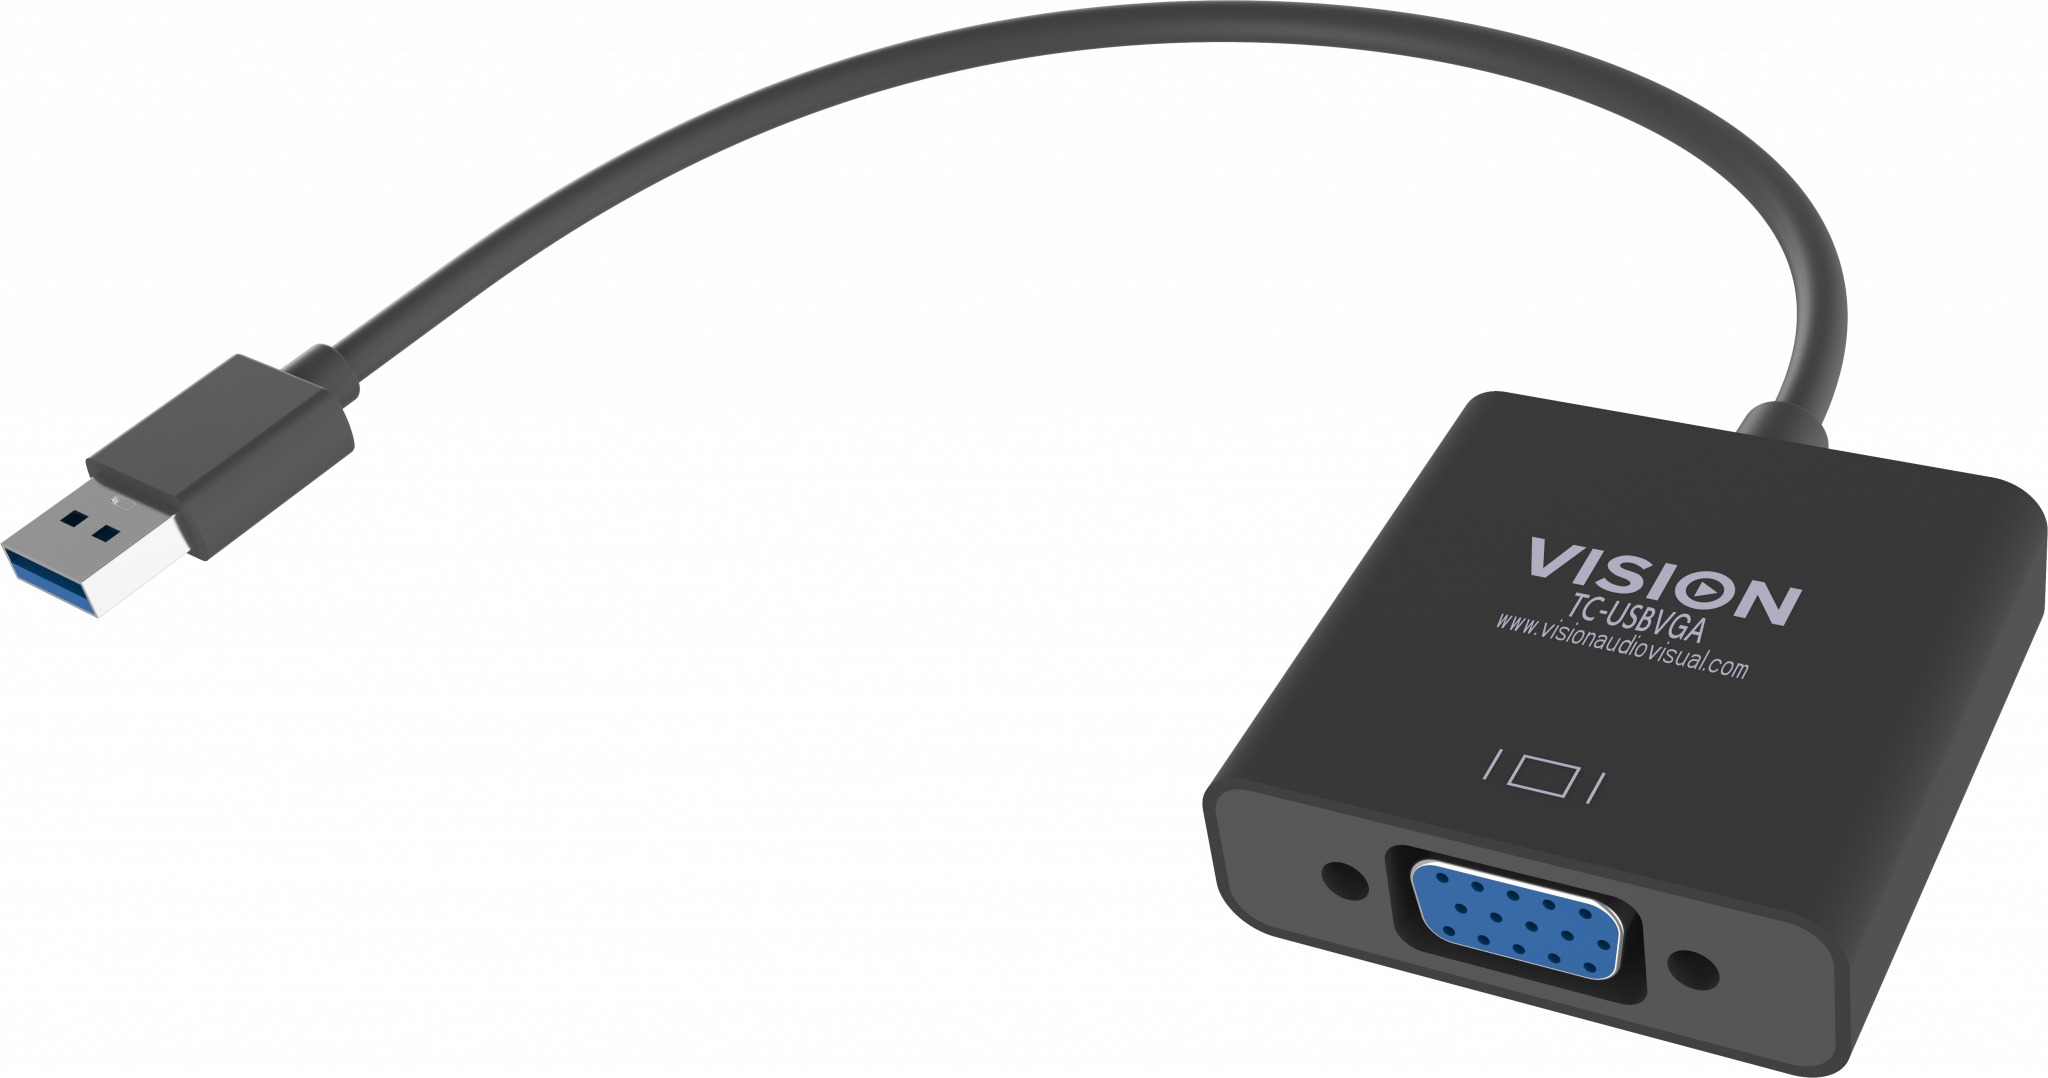 An image showing Adaptador USB 3.0 para VGA de qualidade profissional, preto